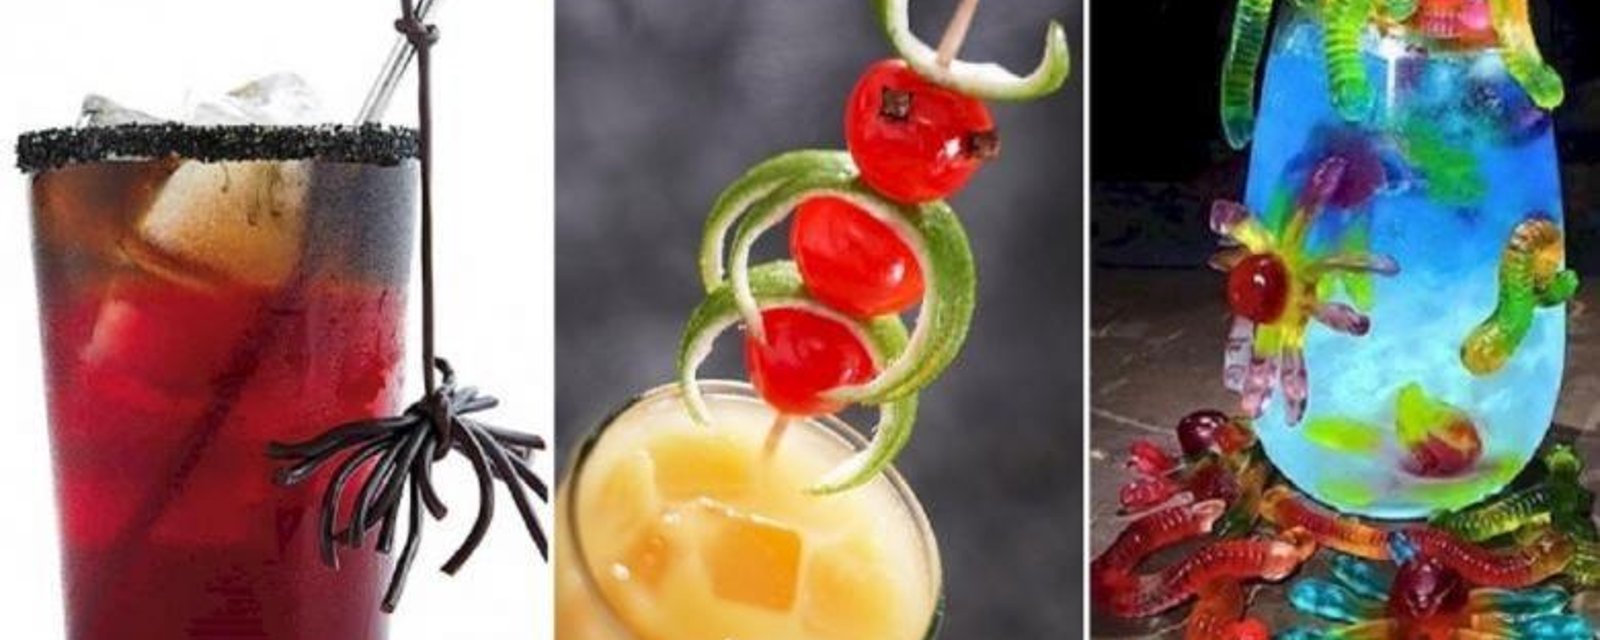 14 Façons HALLUCINANTES de décorer les drinks pour un Party d'Halloween! 